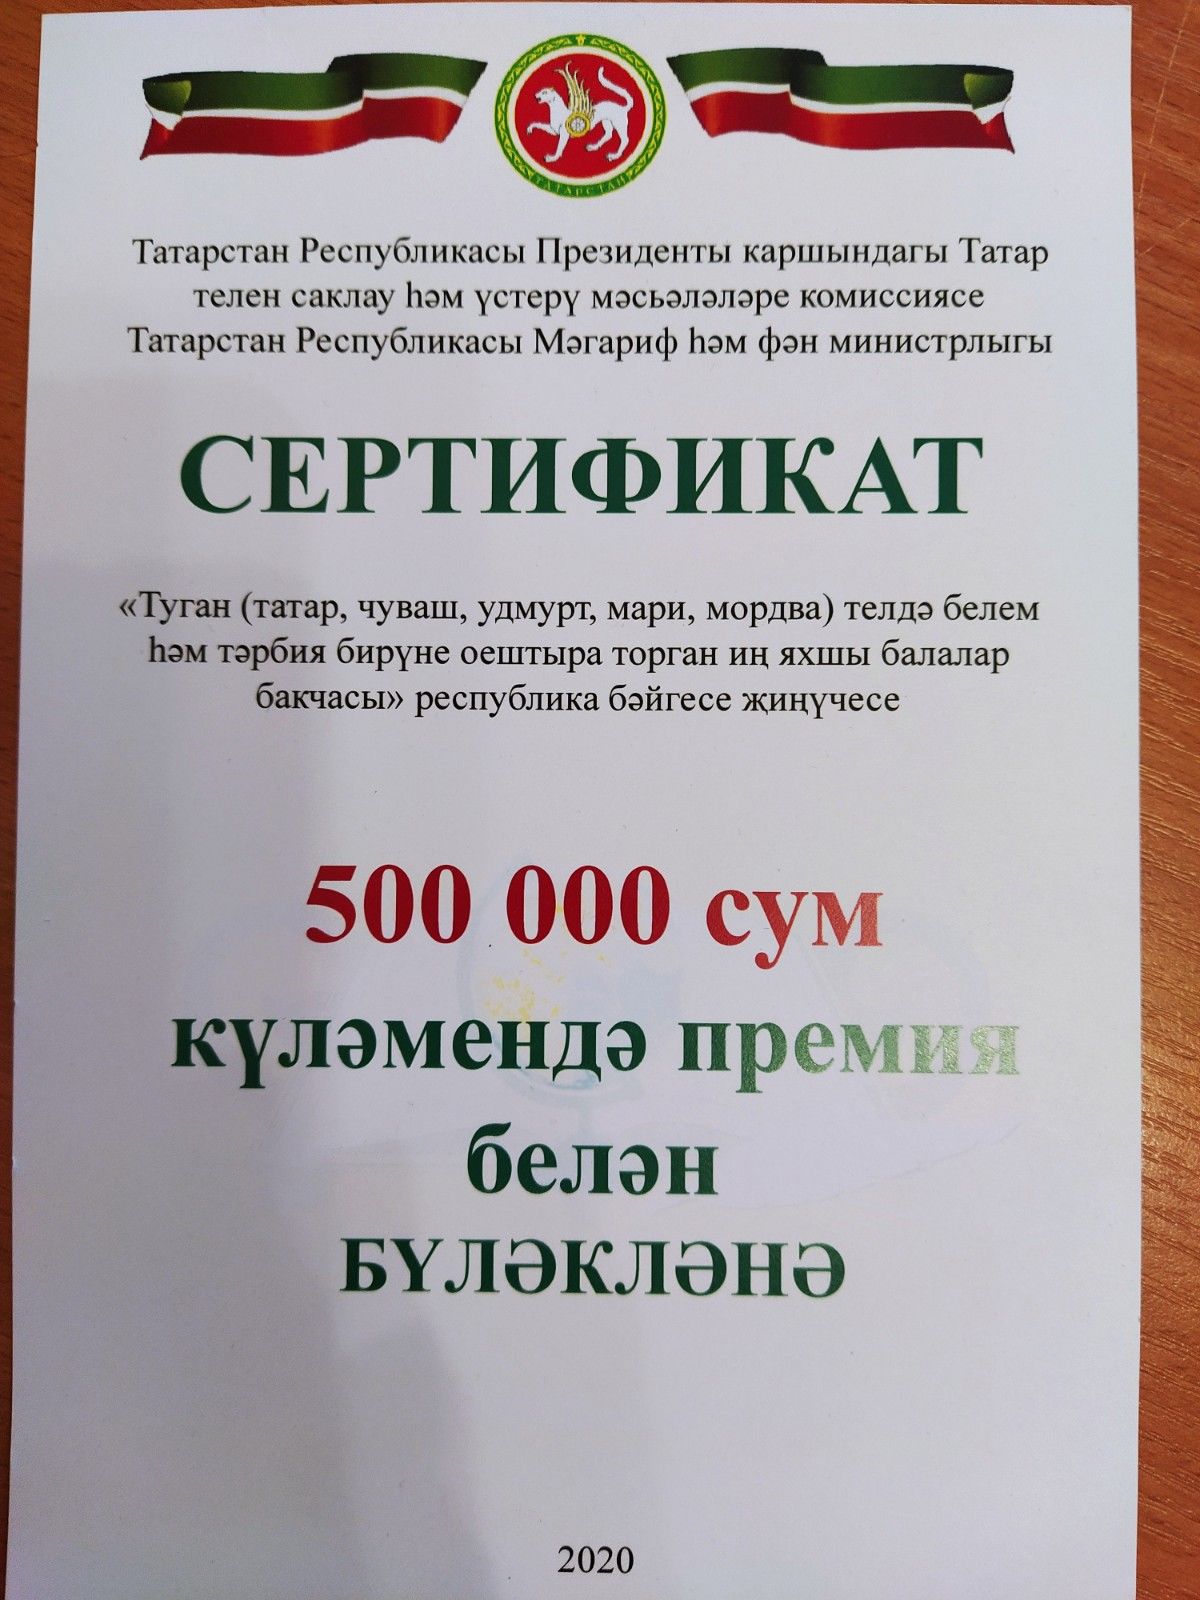 Тел батырлары: 2нче балалар бакчасы 500 мең сумлык грантка ия